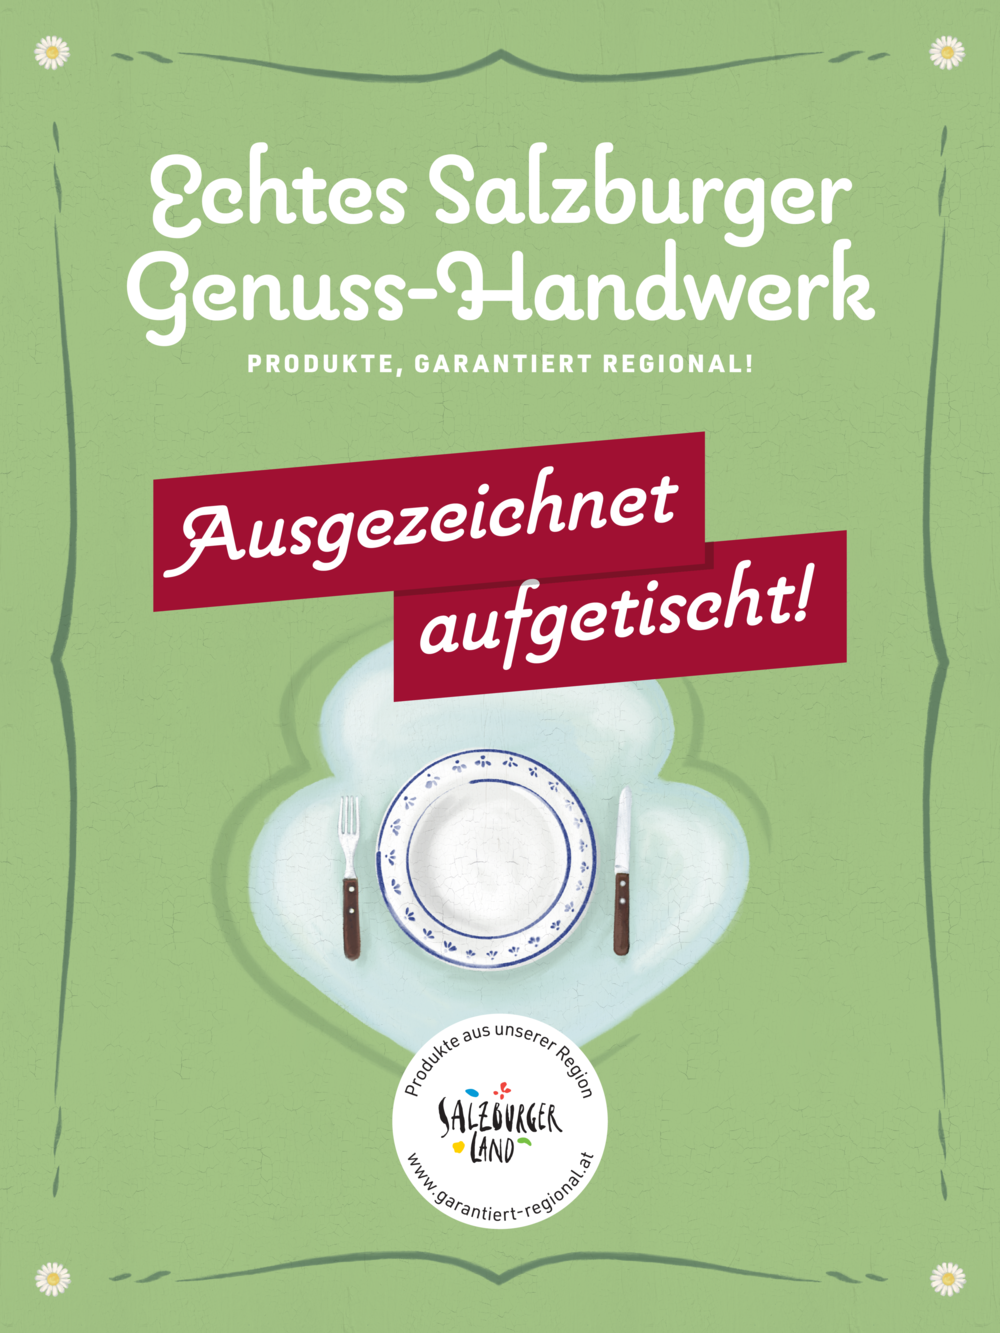 Großküche, Seniorenwohnheim und Krankenhaus Abtenau bei Salzburg schmeckt